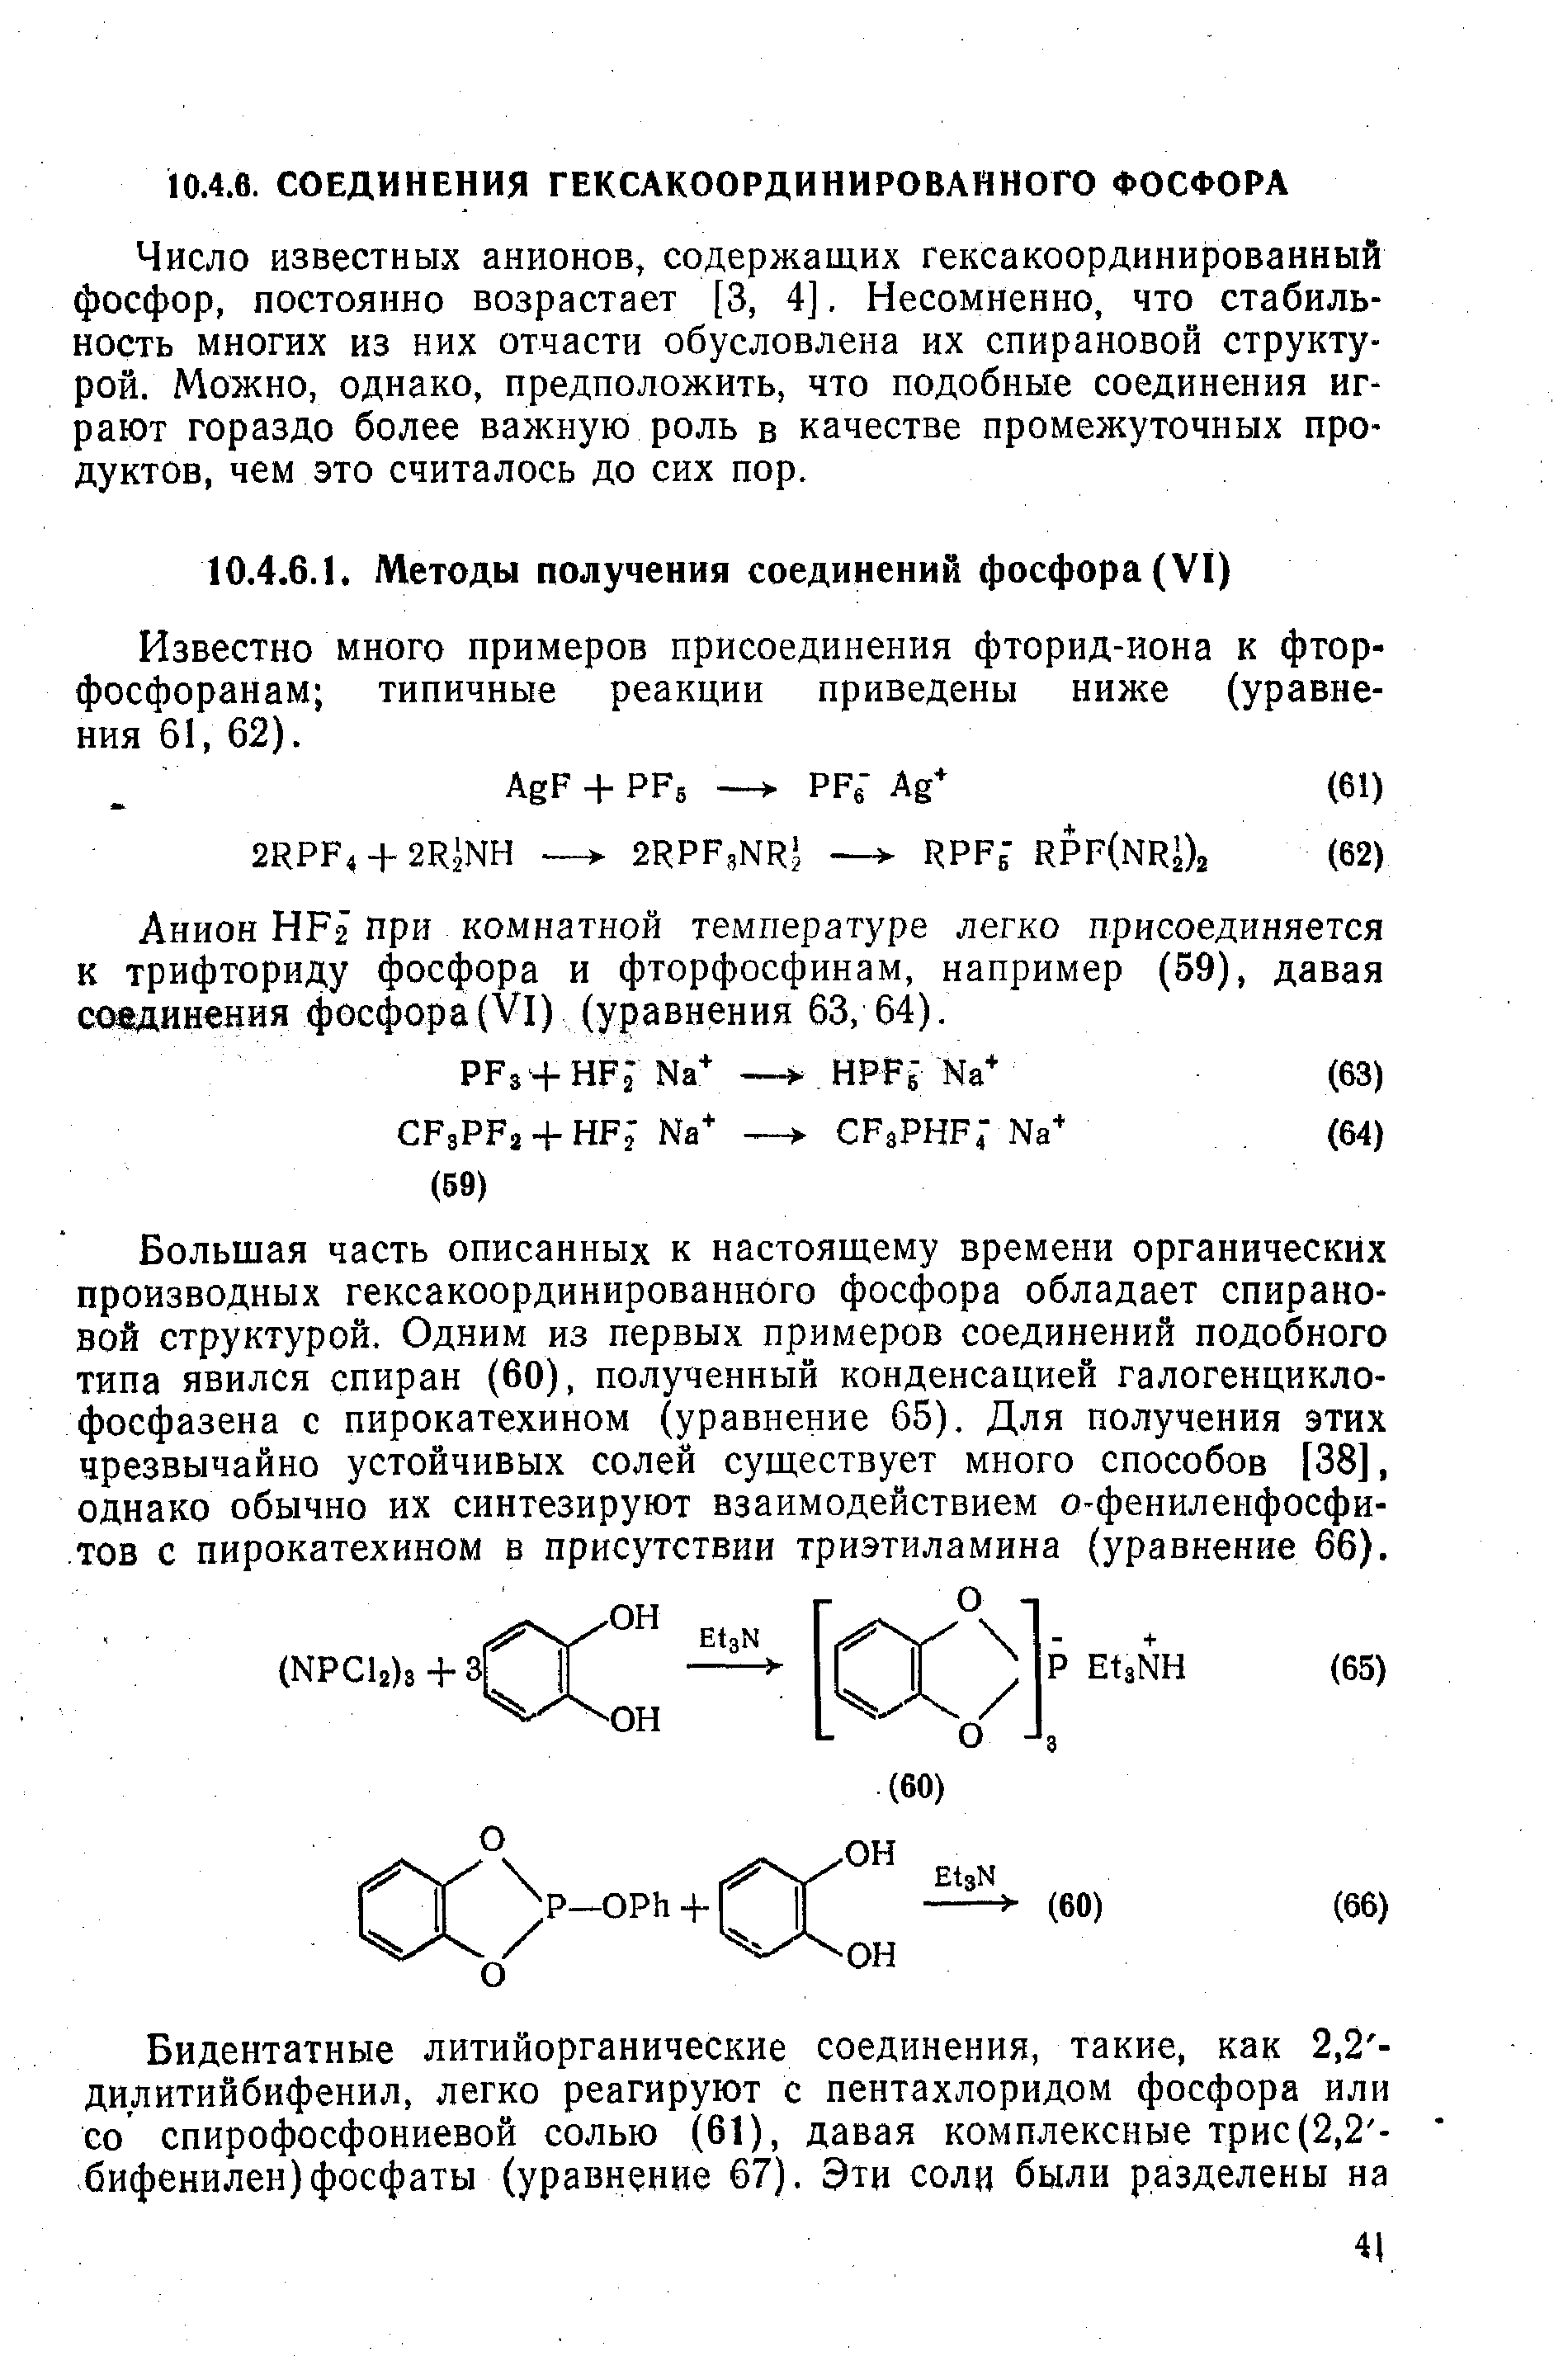 Известно много примеров присоединения фторид-иона к фтор-фосфоранам типичные реакции приведены ниже (уравнения 61, 62).